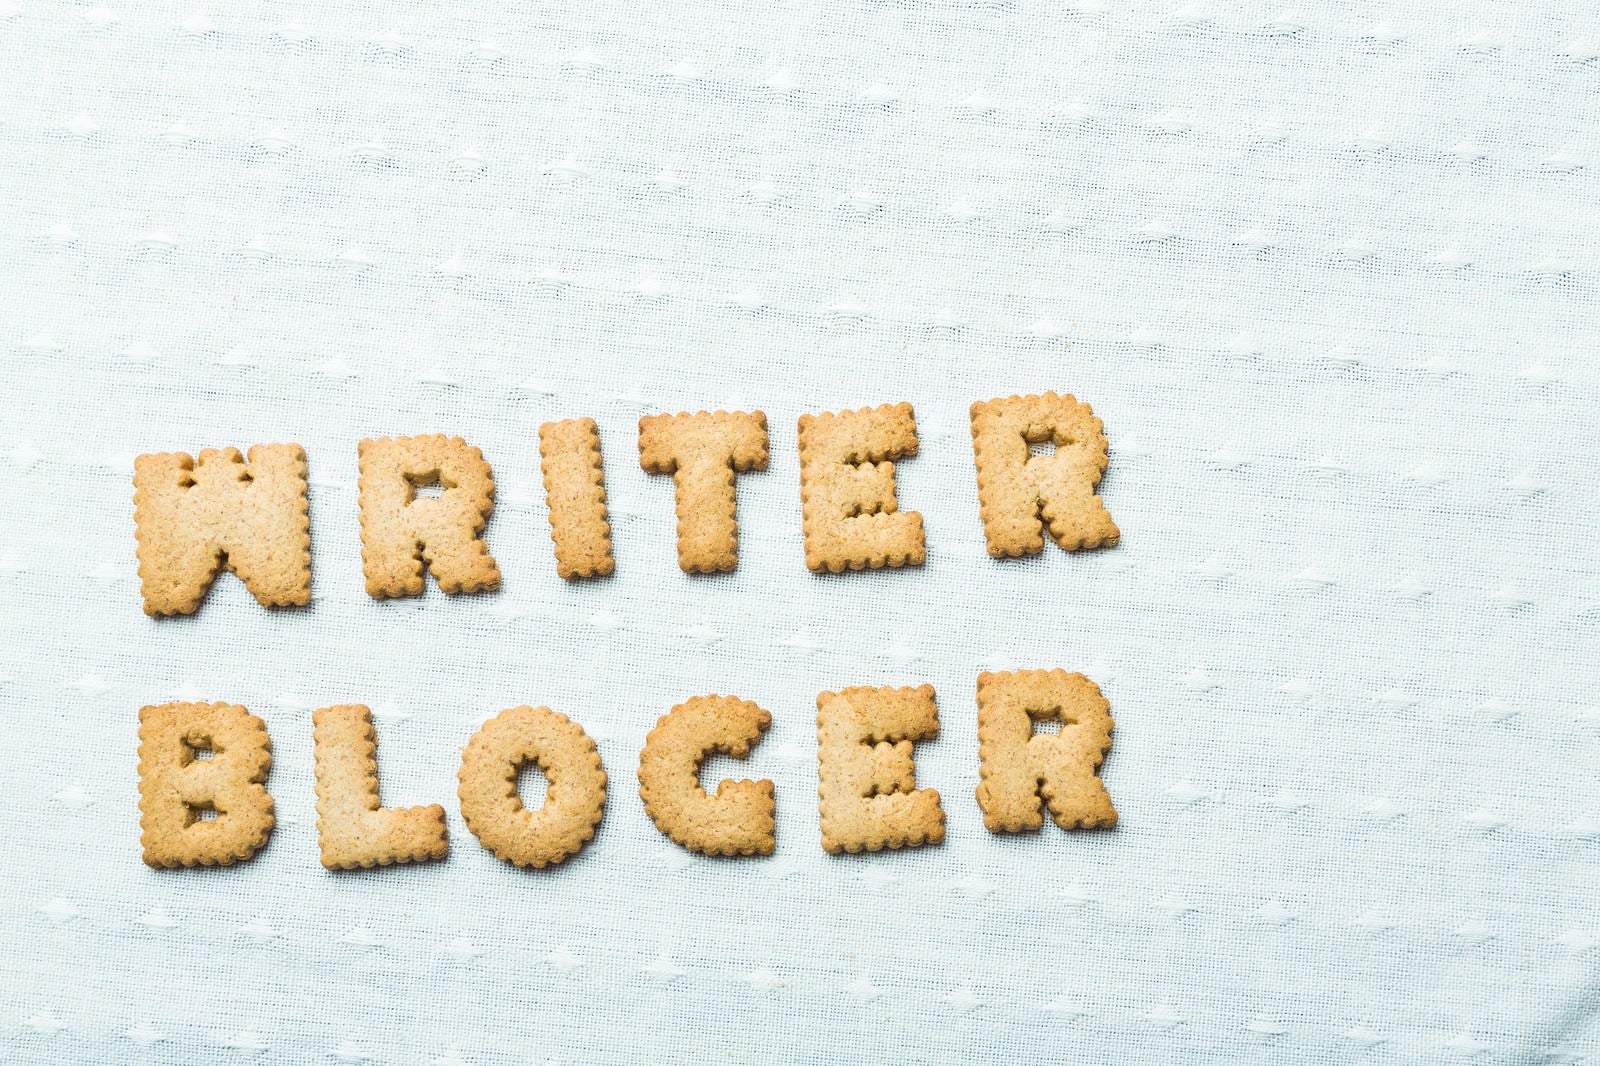 「WRITER、BLOGERと並べられたクッキー」の写真